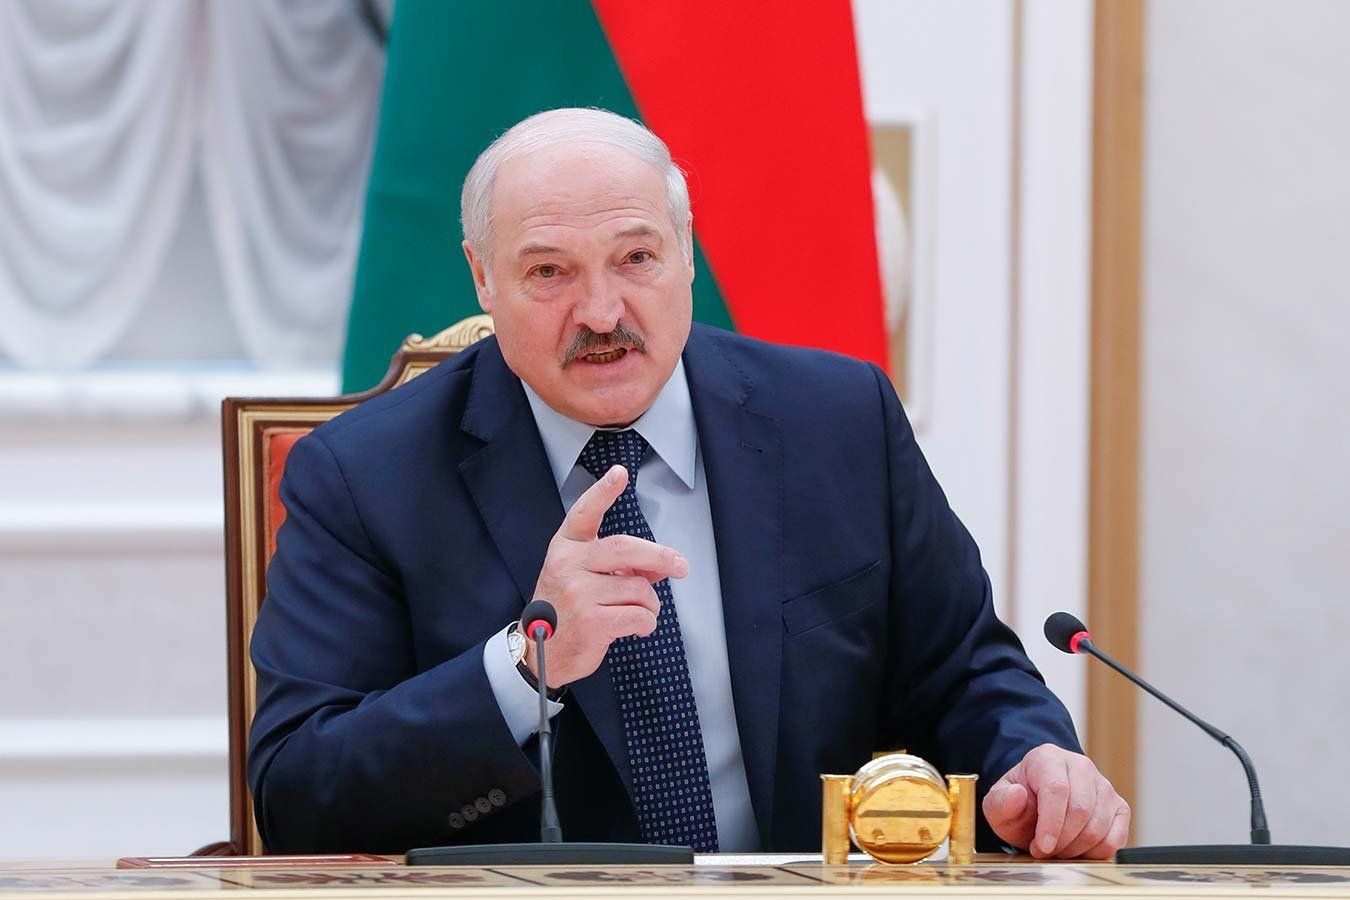 Лукашенко: если едешь на Олимпиаду в нейтральном статусе, тогда набей им морду